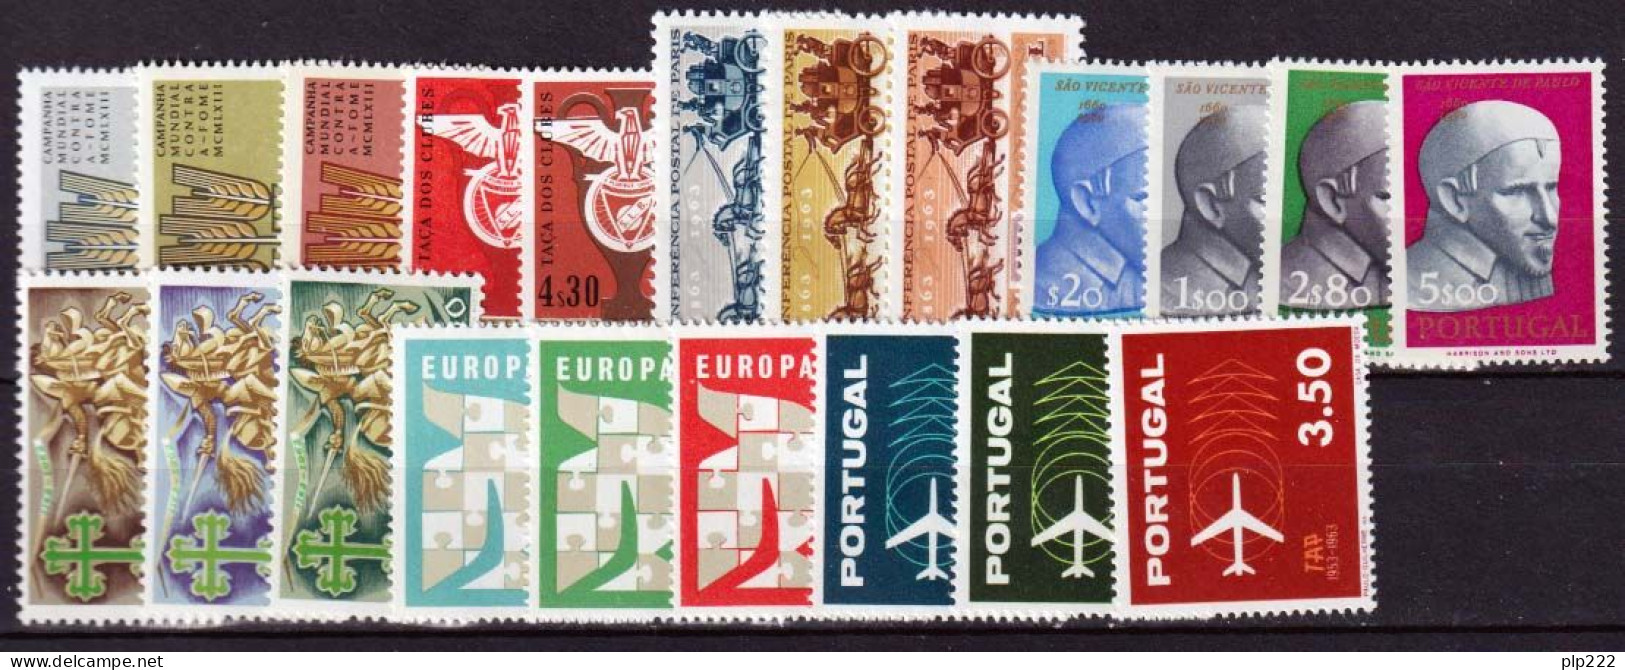 Portogallo 1963 Annata Completa / Complete Year Set **/MNH VF - Annate Complete